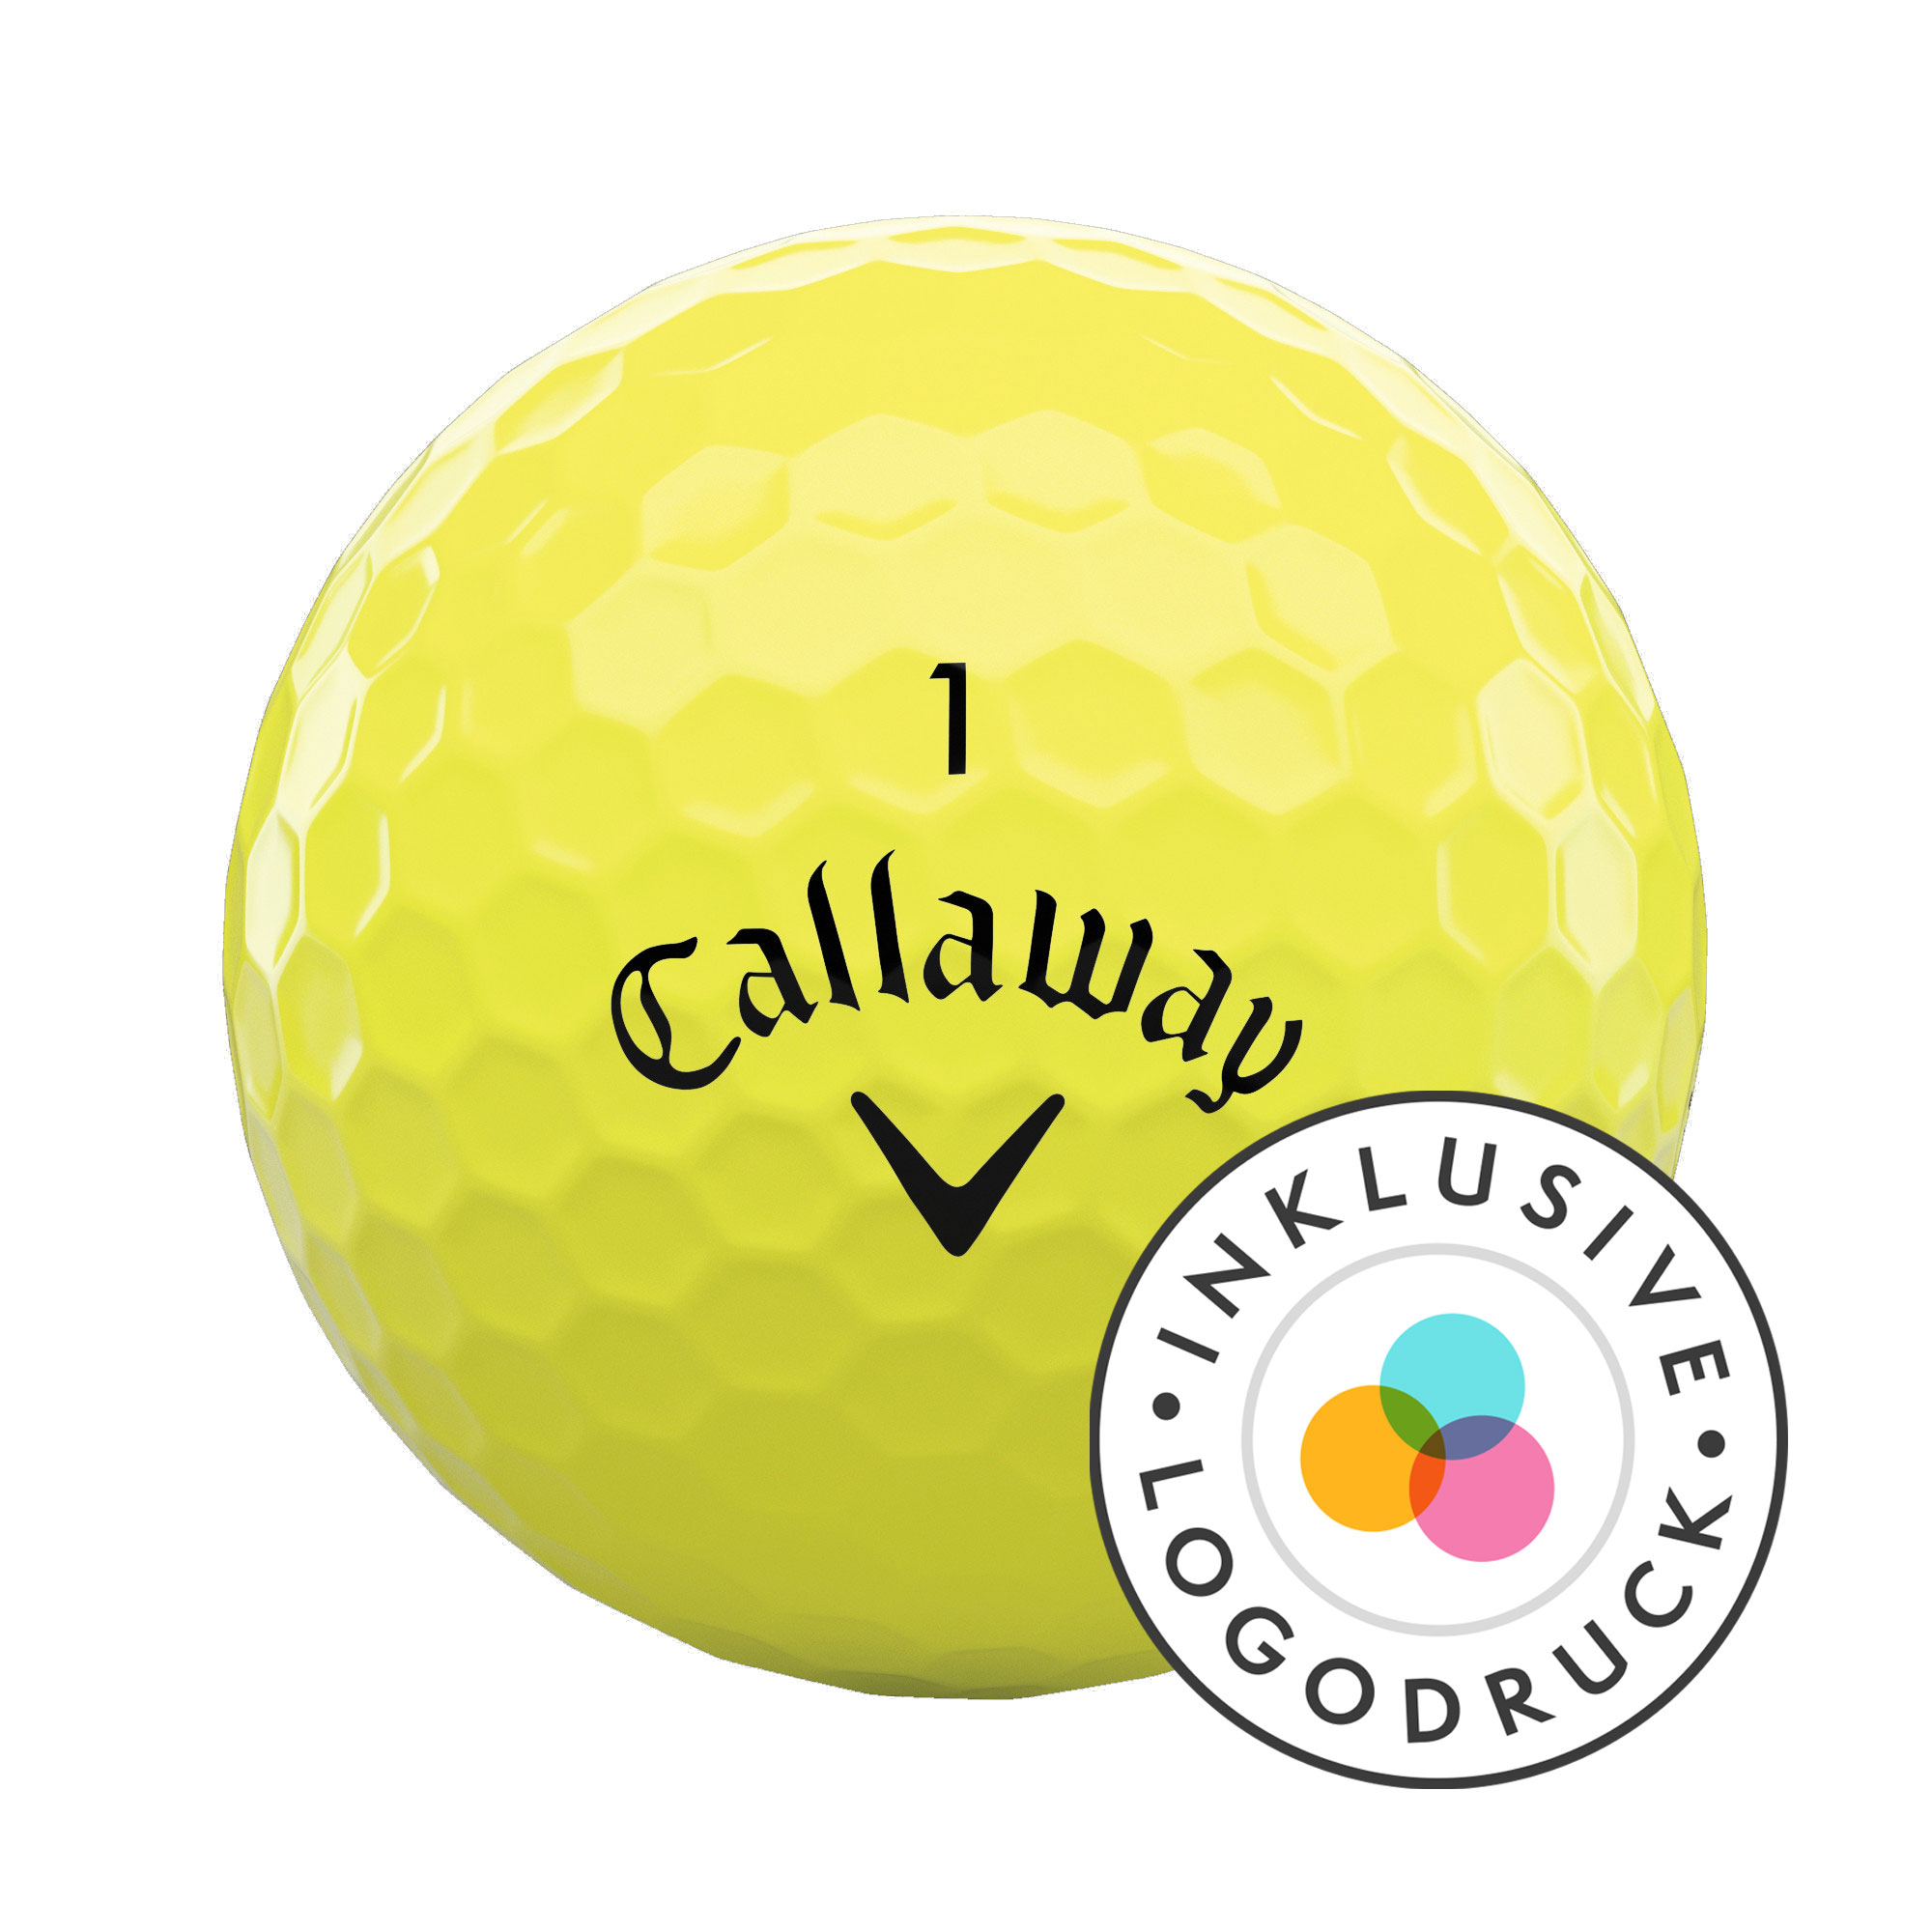 Callaway Warbird Golfbälle bedruckt, gelb (VPE à 12 Bälle)